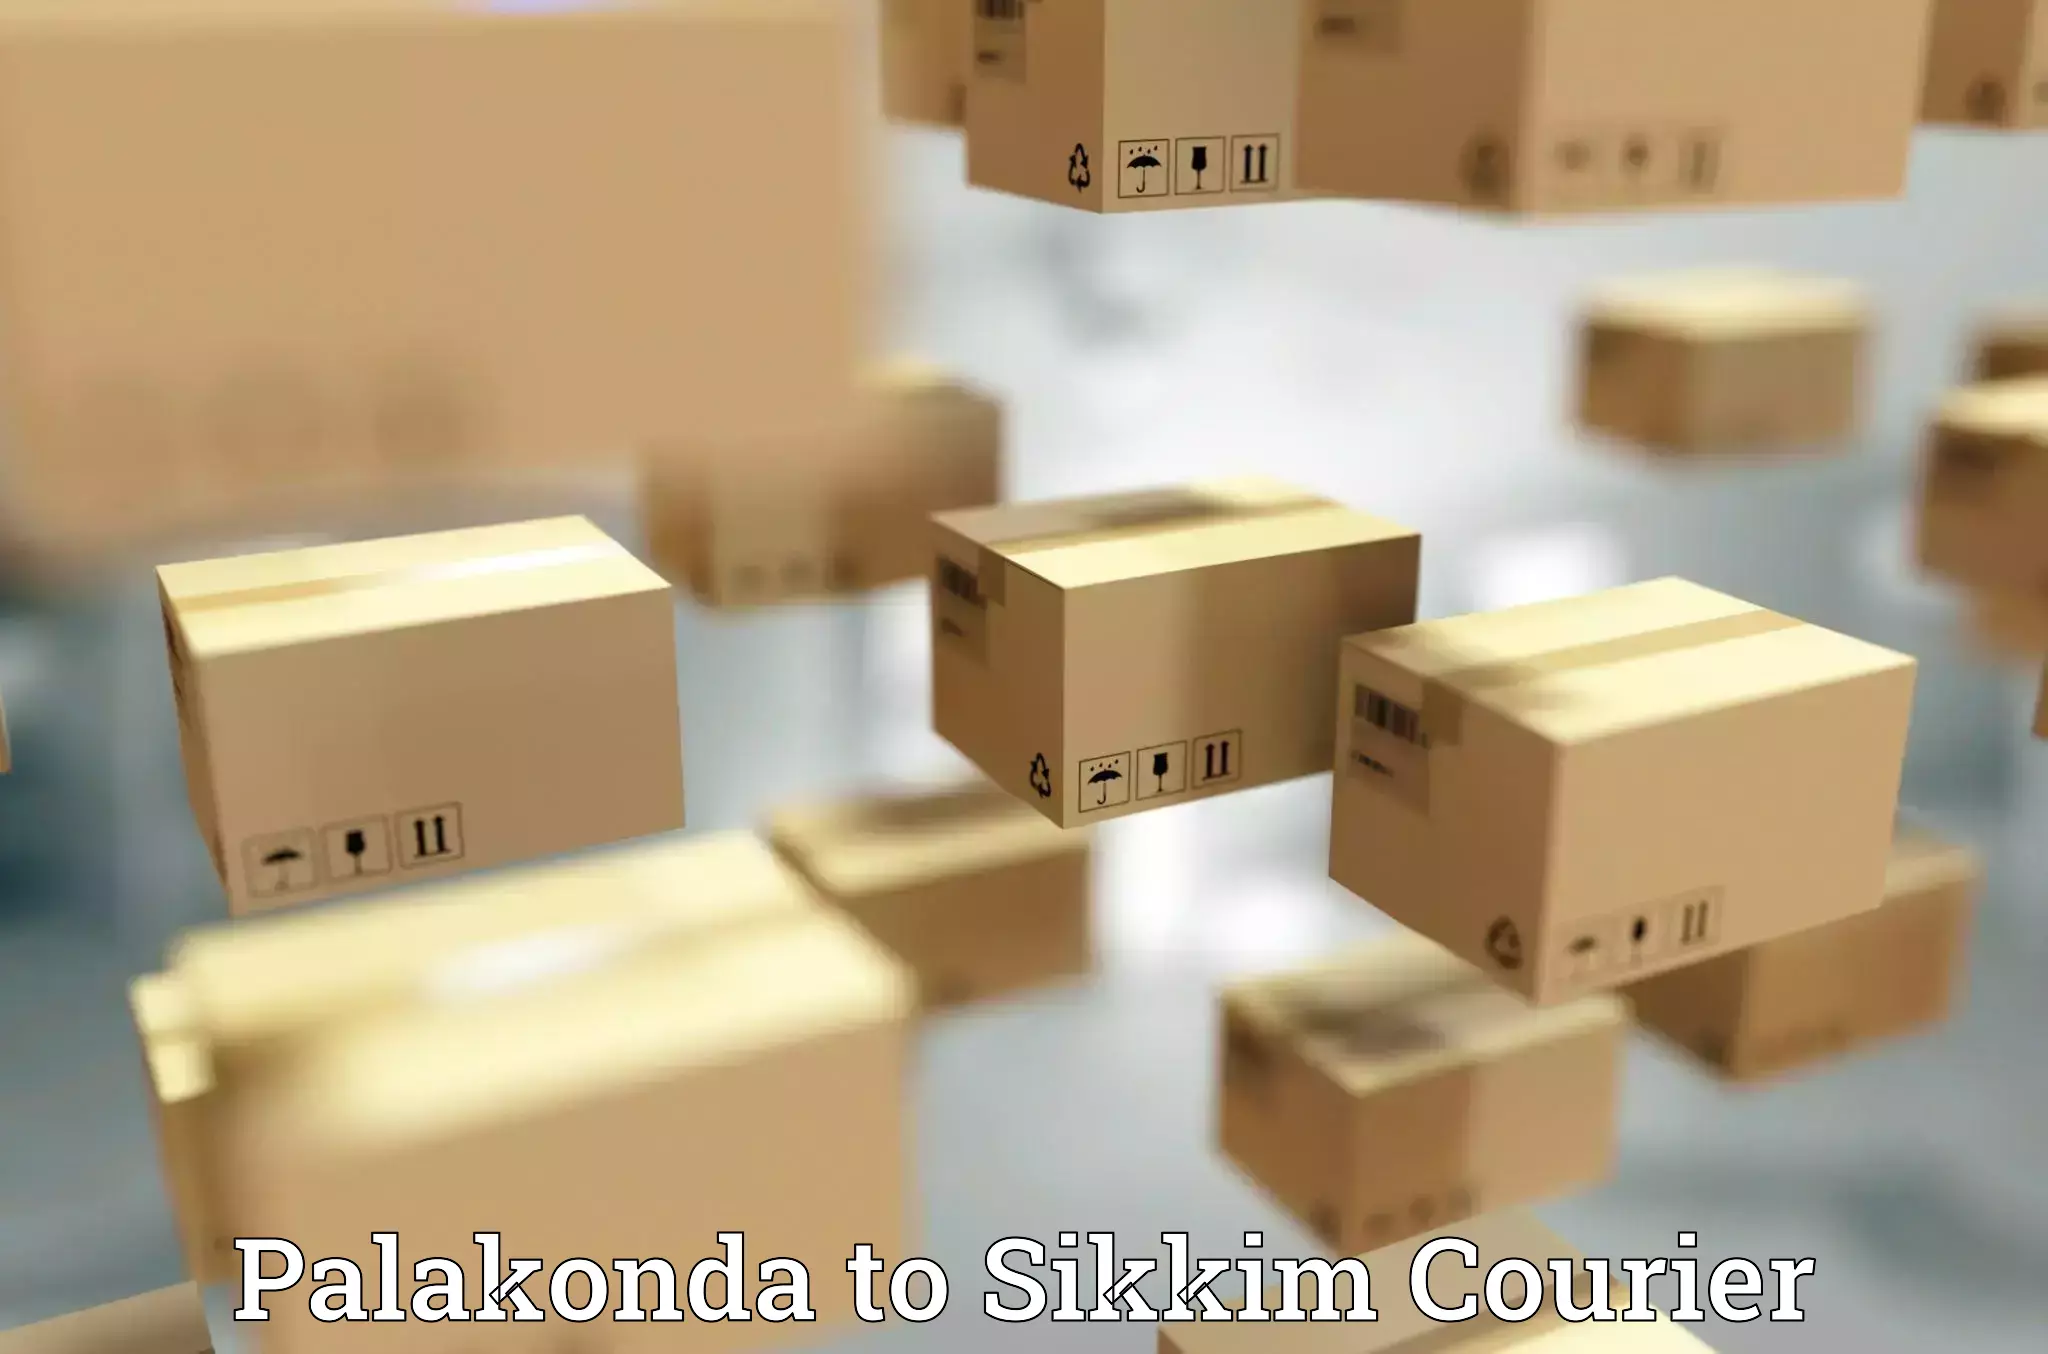 Expedited shipping methods Palakonda to Sikkim